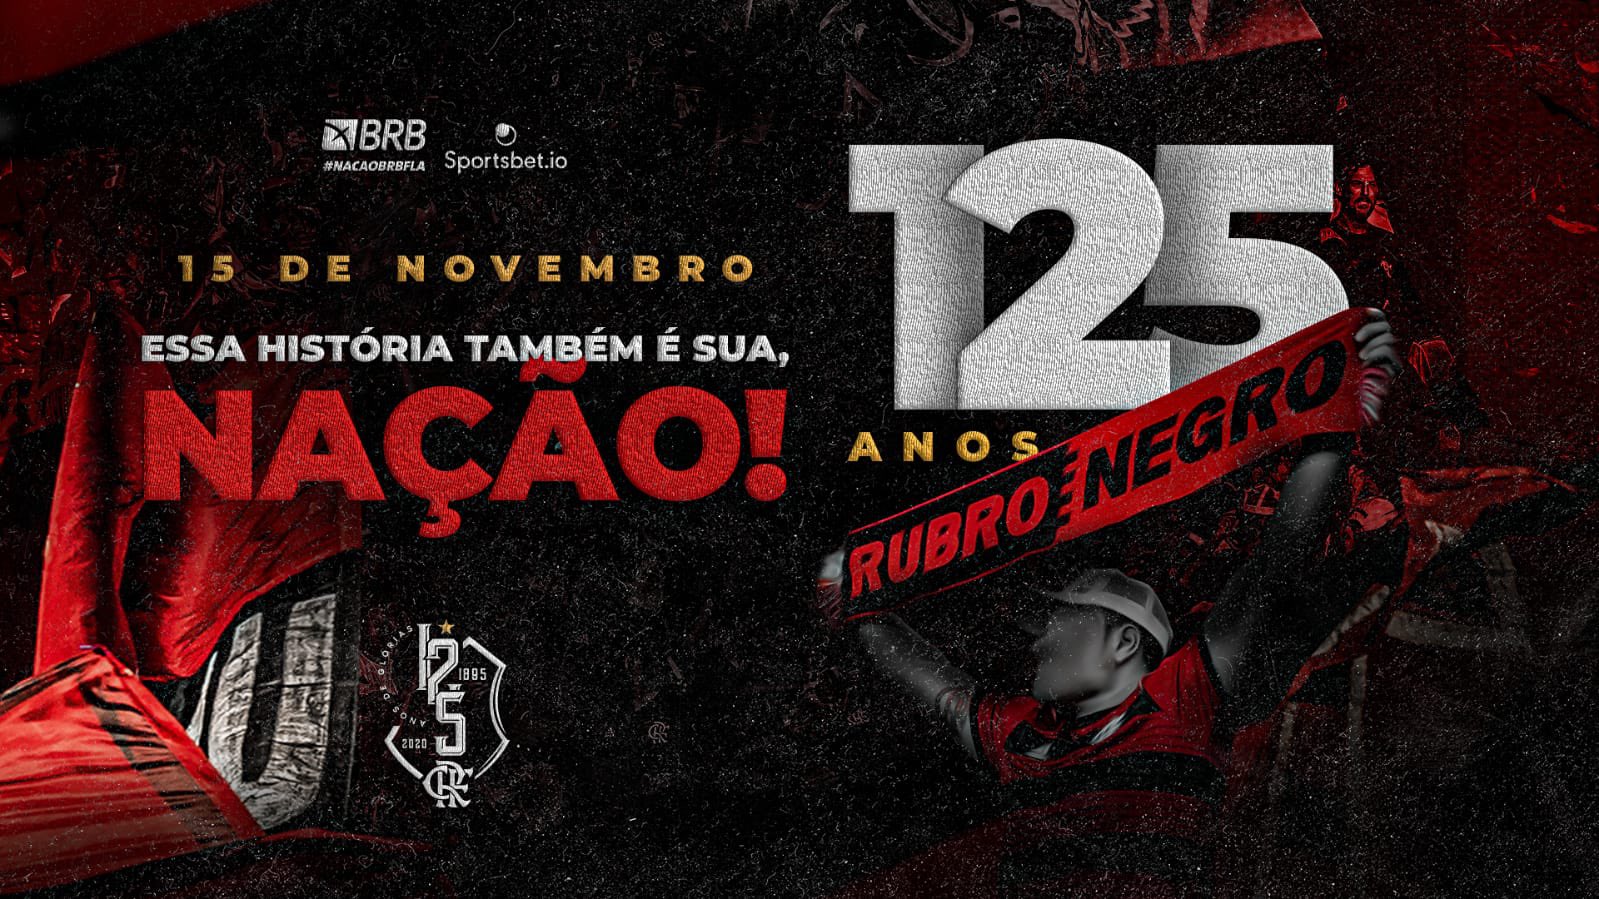 Flamengo descansa jogadores, mostra evolução e eleva confiança